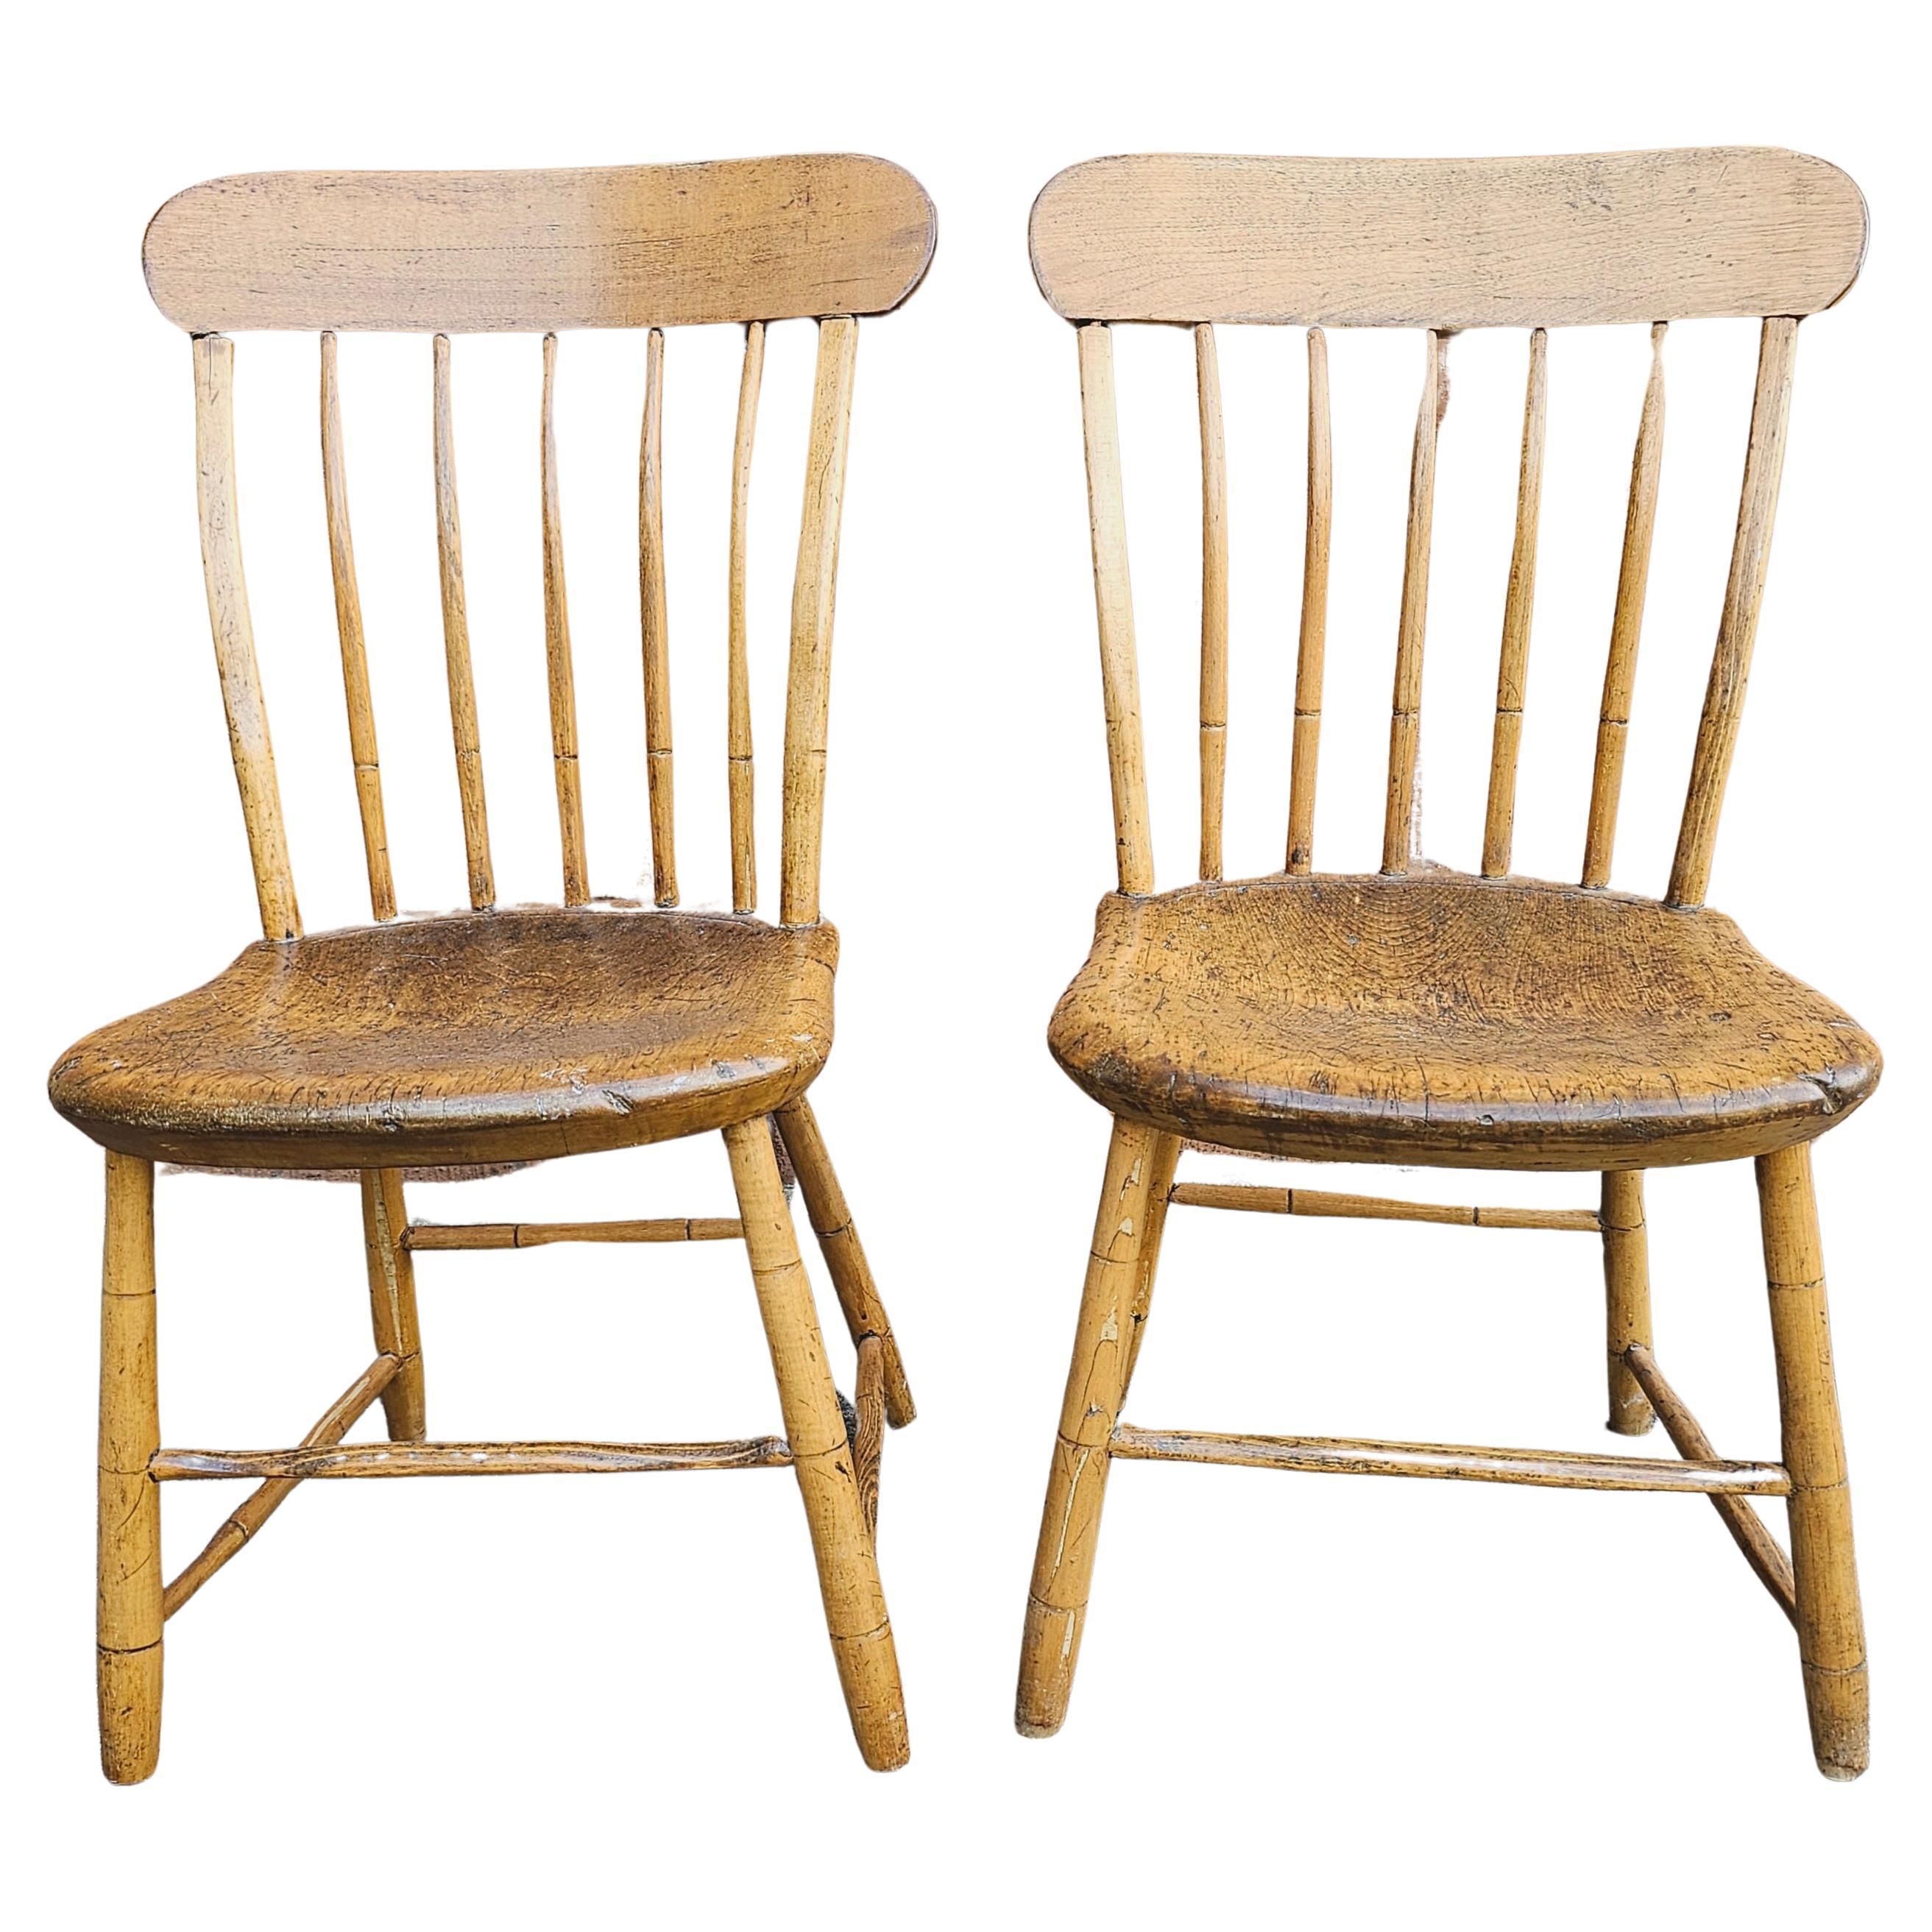 Paire de chaises américaines anciennes en érable patiné, datant du milieu du 19e siècle